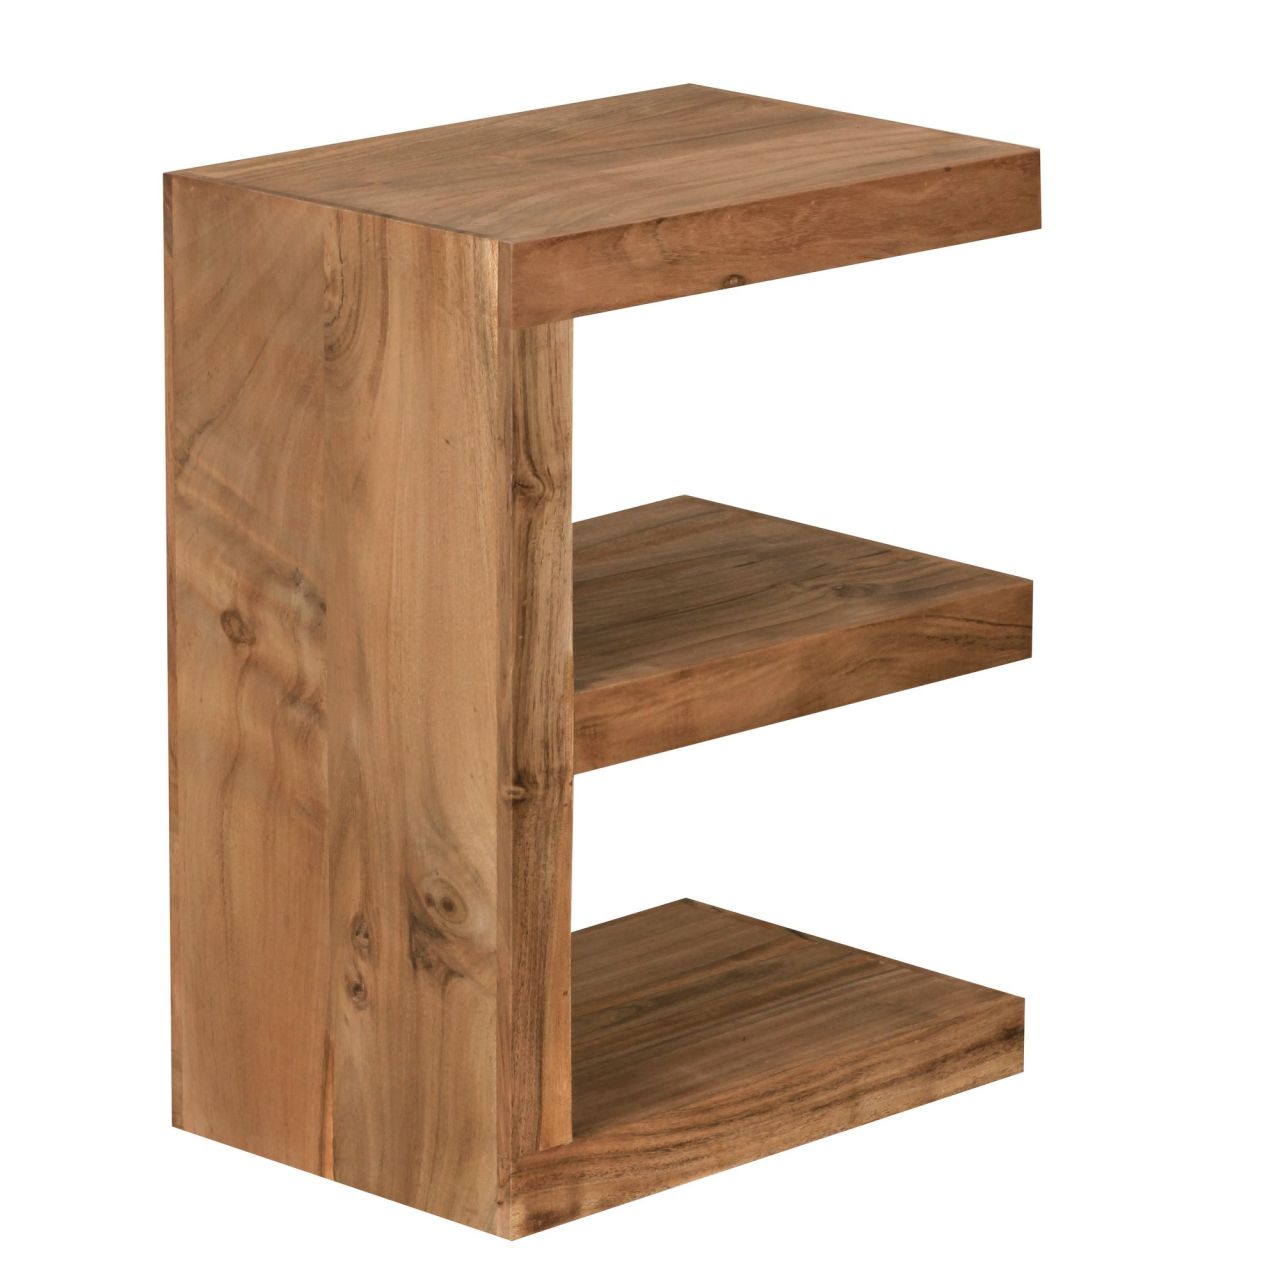 Beistelltisch MUMBAI Massivholz Akazie E Cube 60 cm hoch Wohnzimmer-Tisch Design braun Landhaus-Stil Couchtisch